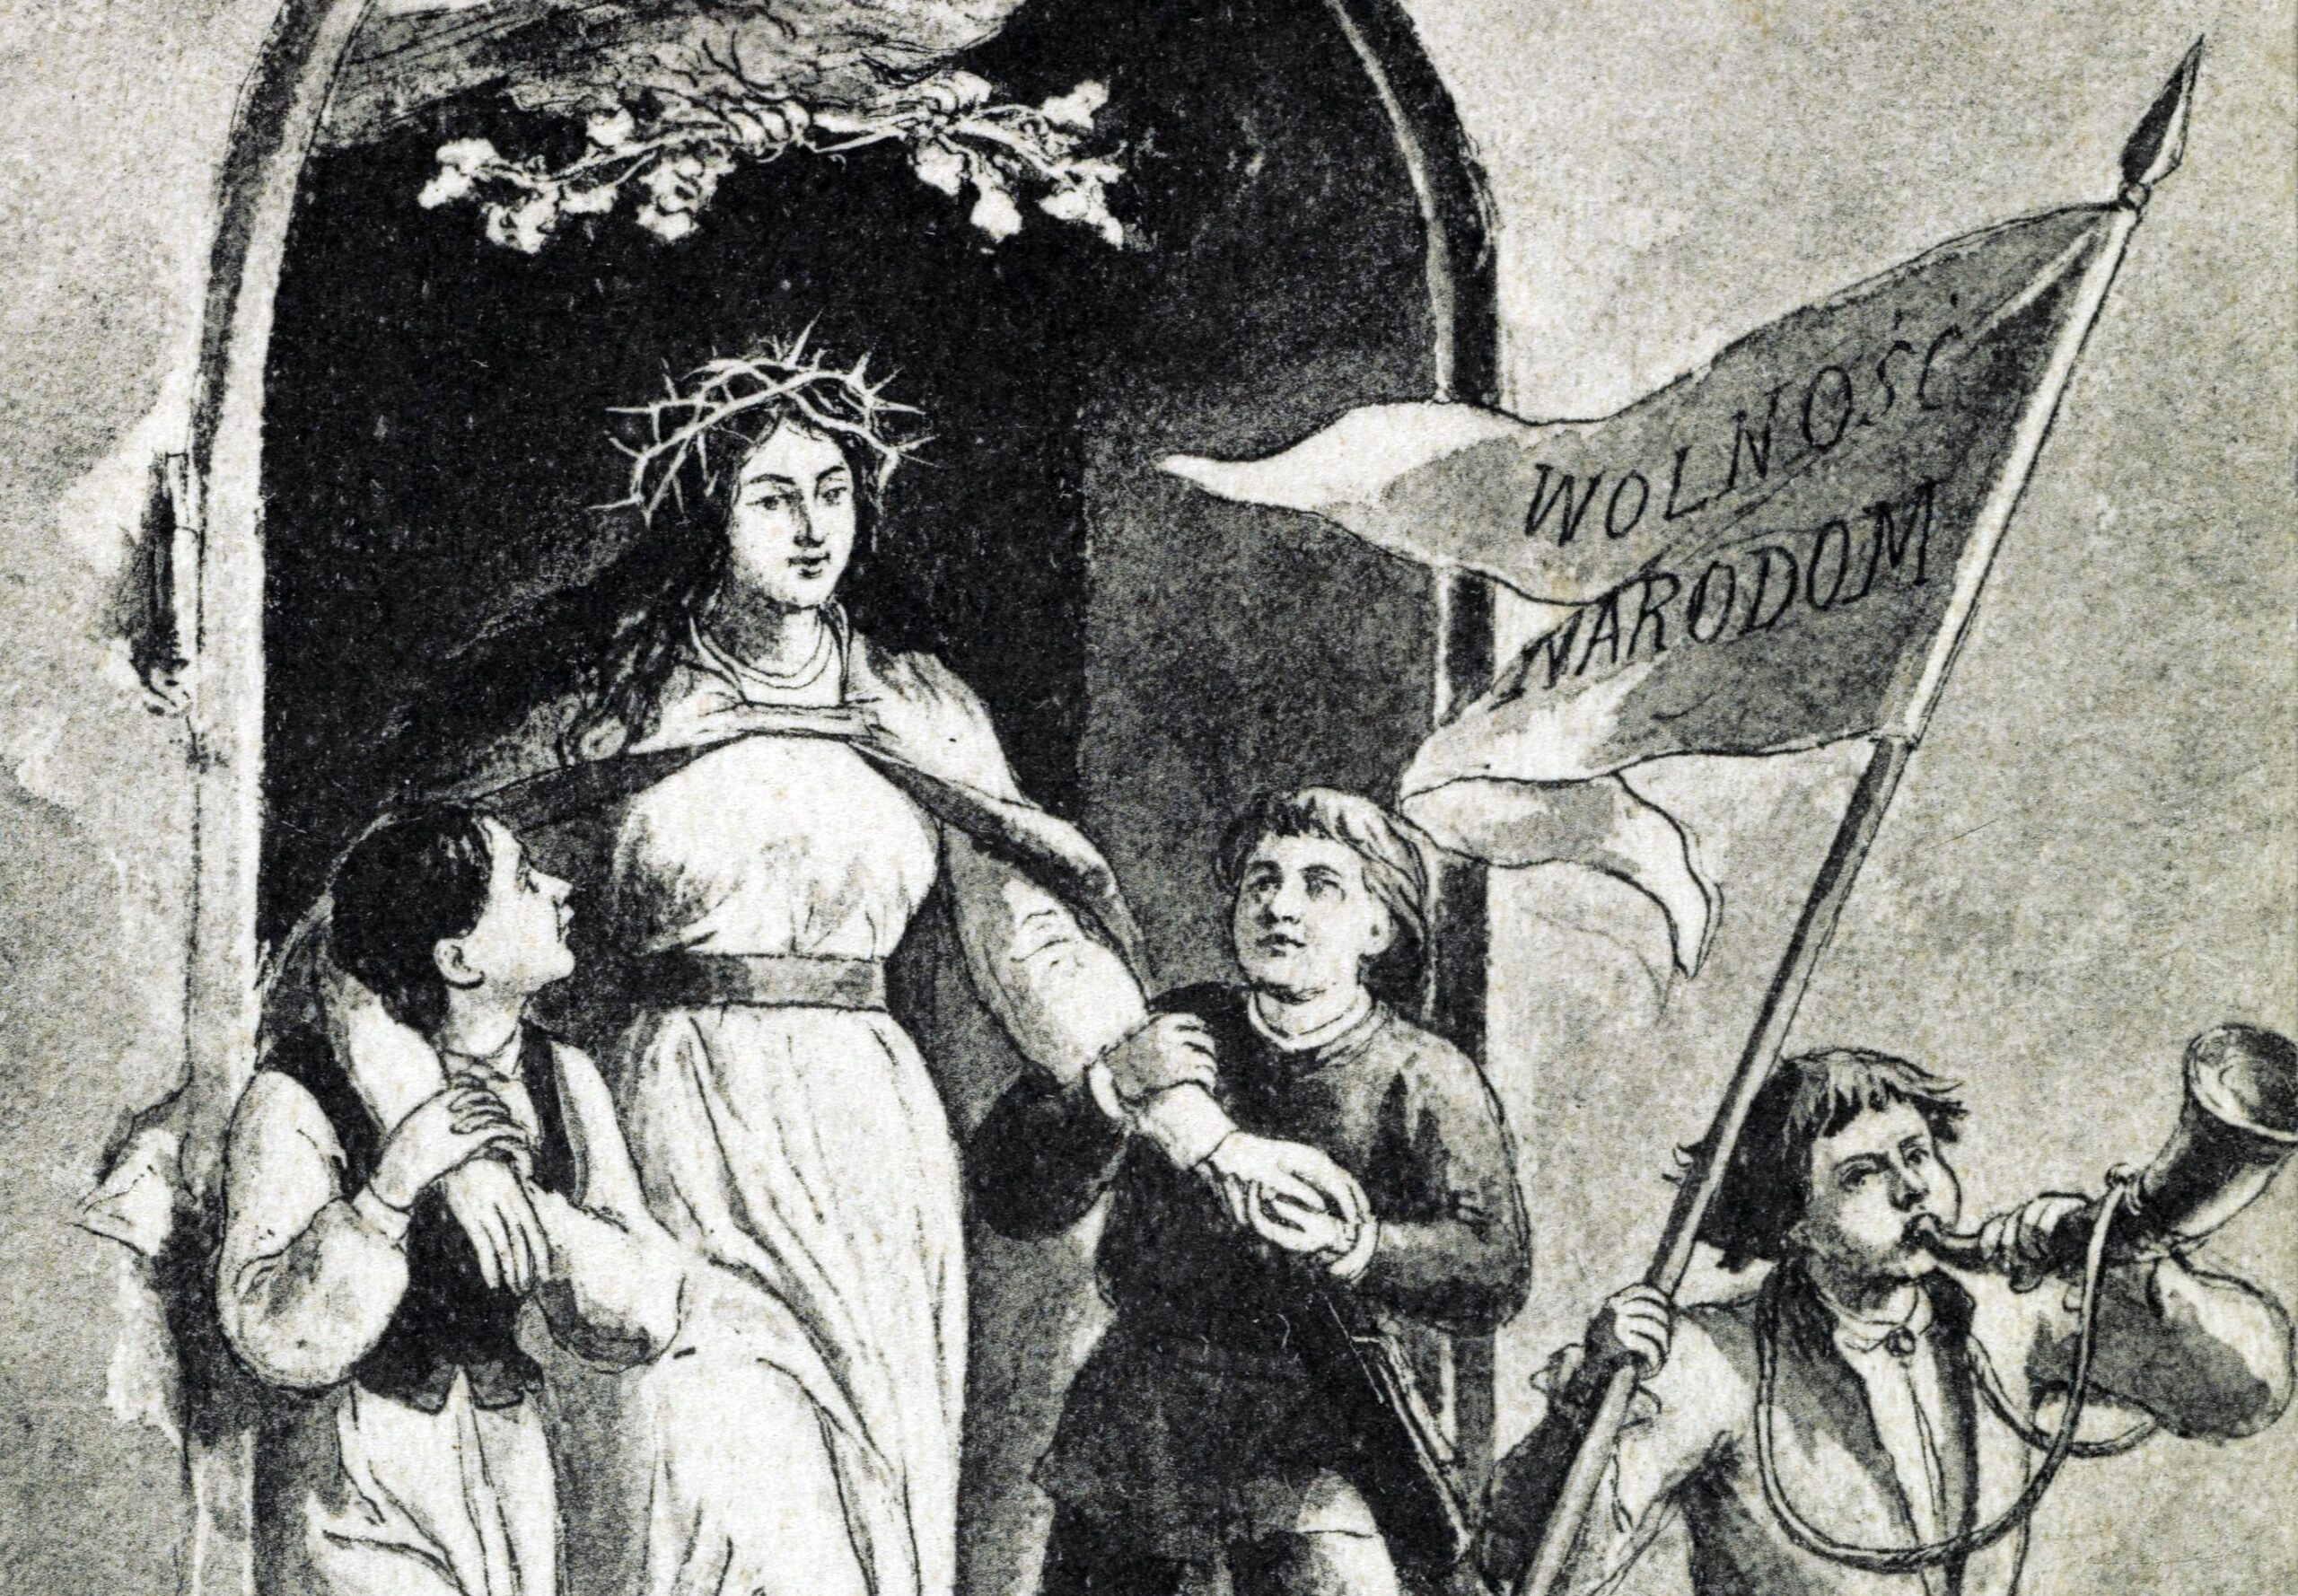 Czarno-biała grafika. Kobieta w koronie cierniowej i trzech chłopców niosą sztandar z napisem wolność narodom.